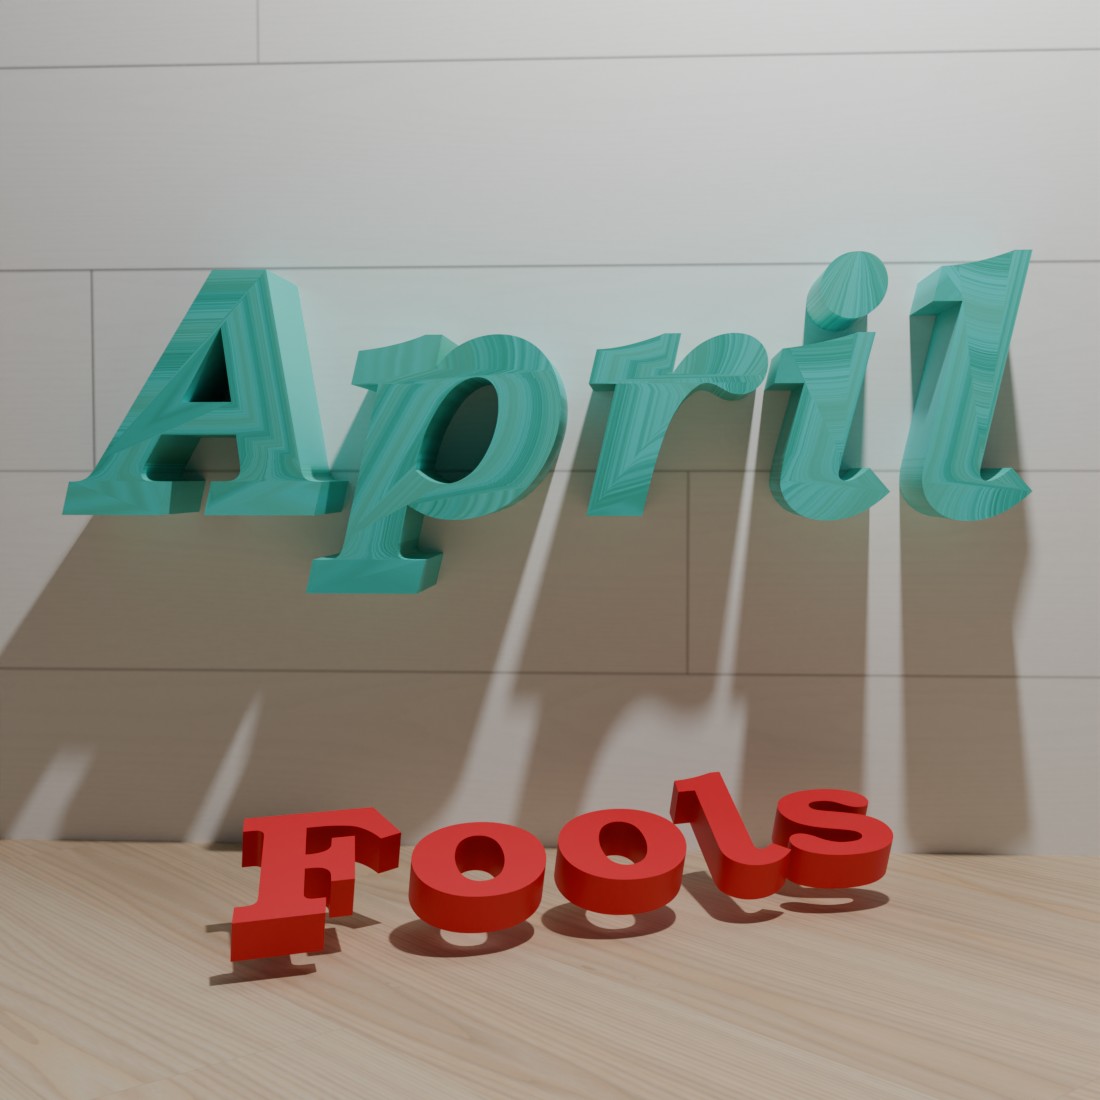 April Fools cover image.